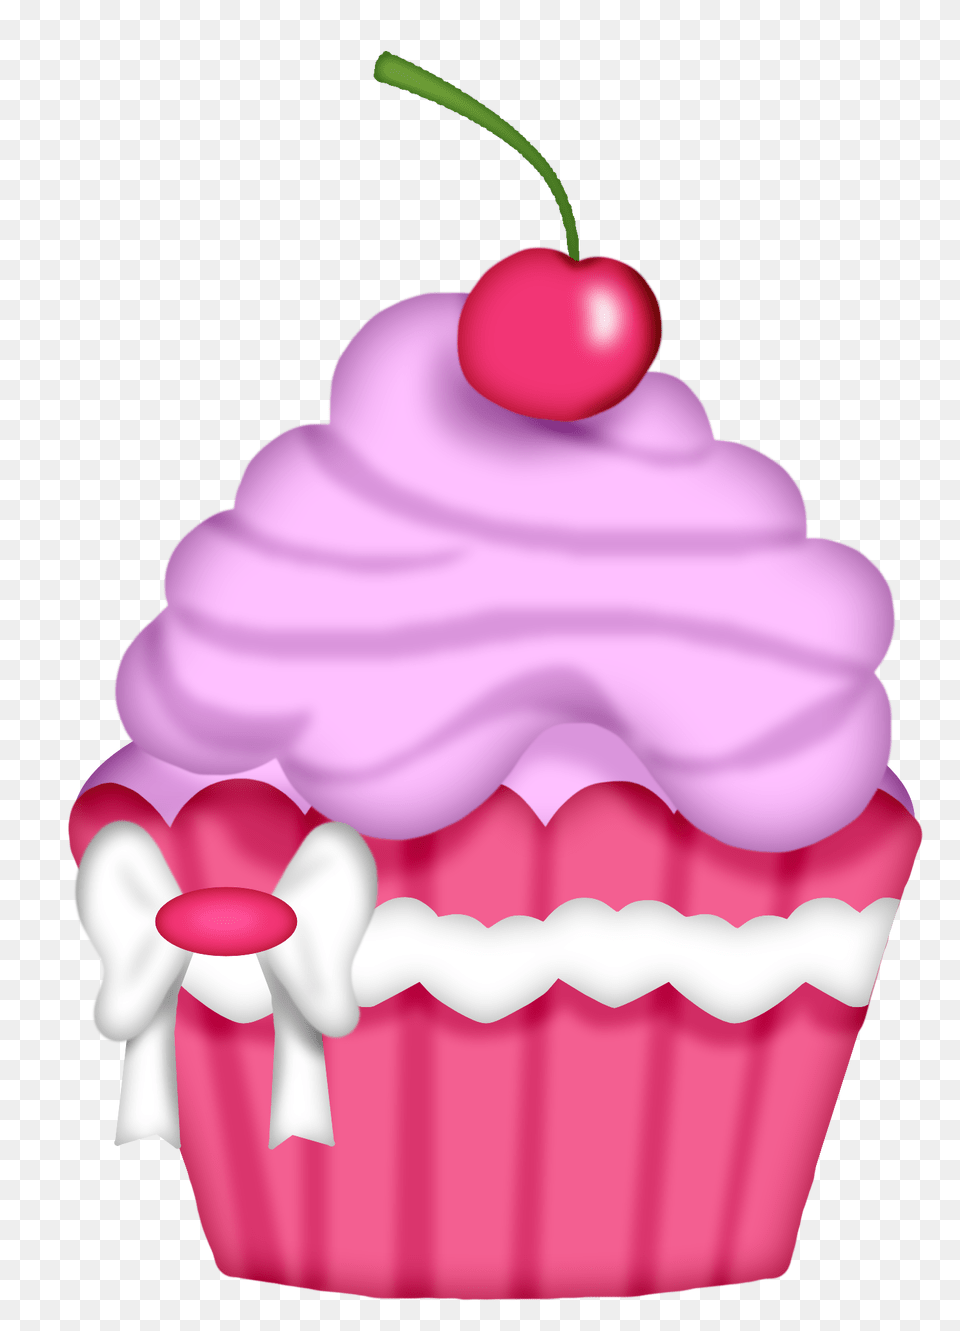 Orig Mutfak Dekopaj, Cake, Cream, Cupcake, Dessert Png Image